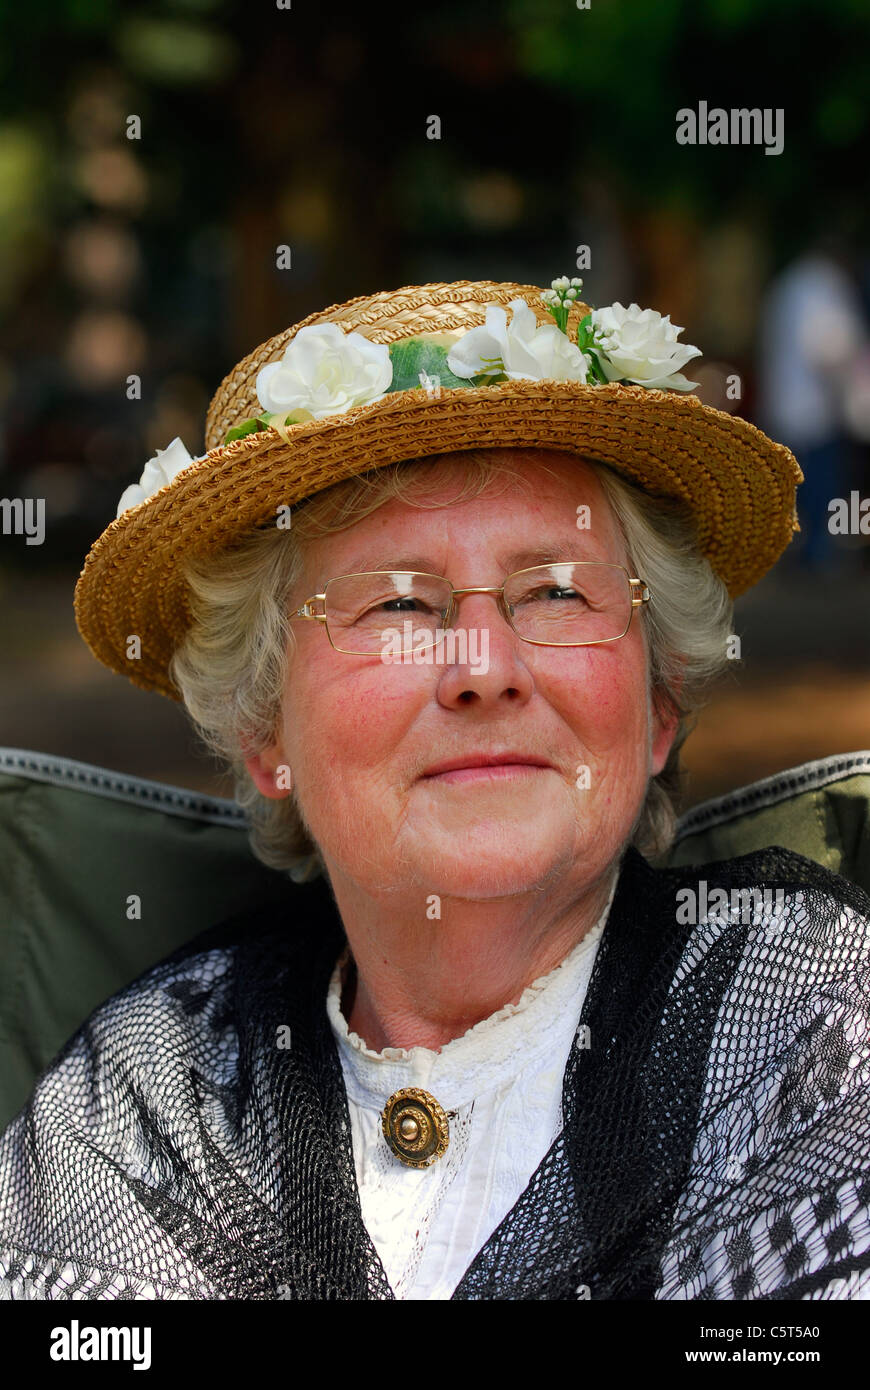 Ältere Dame in viktorianischen Kostüm bei rustikalen Sonntag, eine jährliche Veranstaltung feiert traditionelle ländlichen Lebensformen Stockfoto